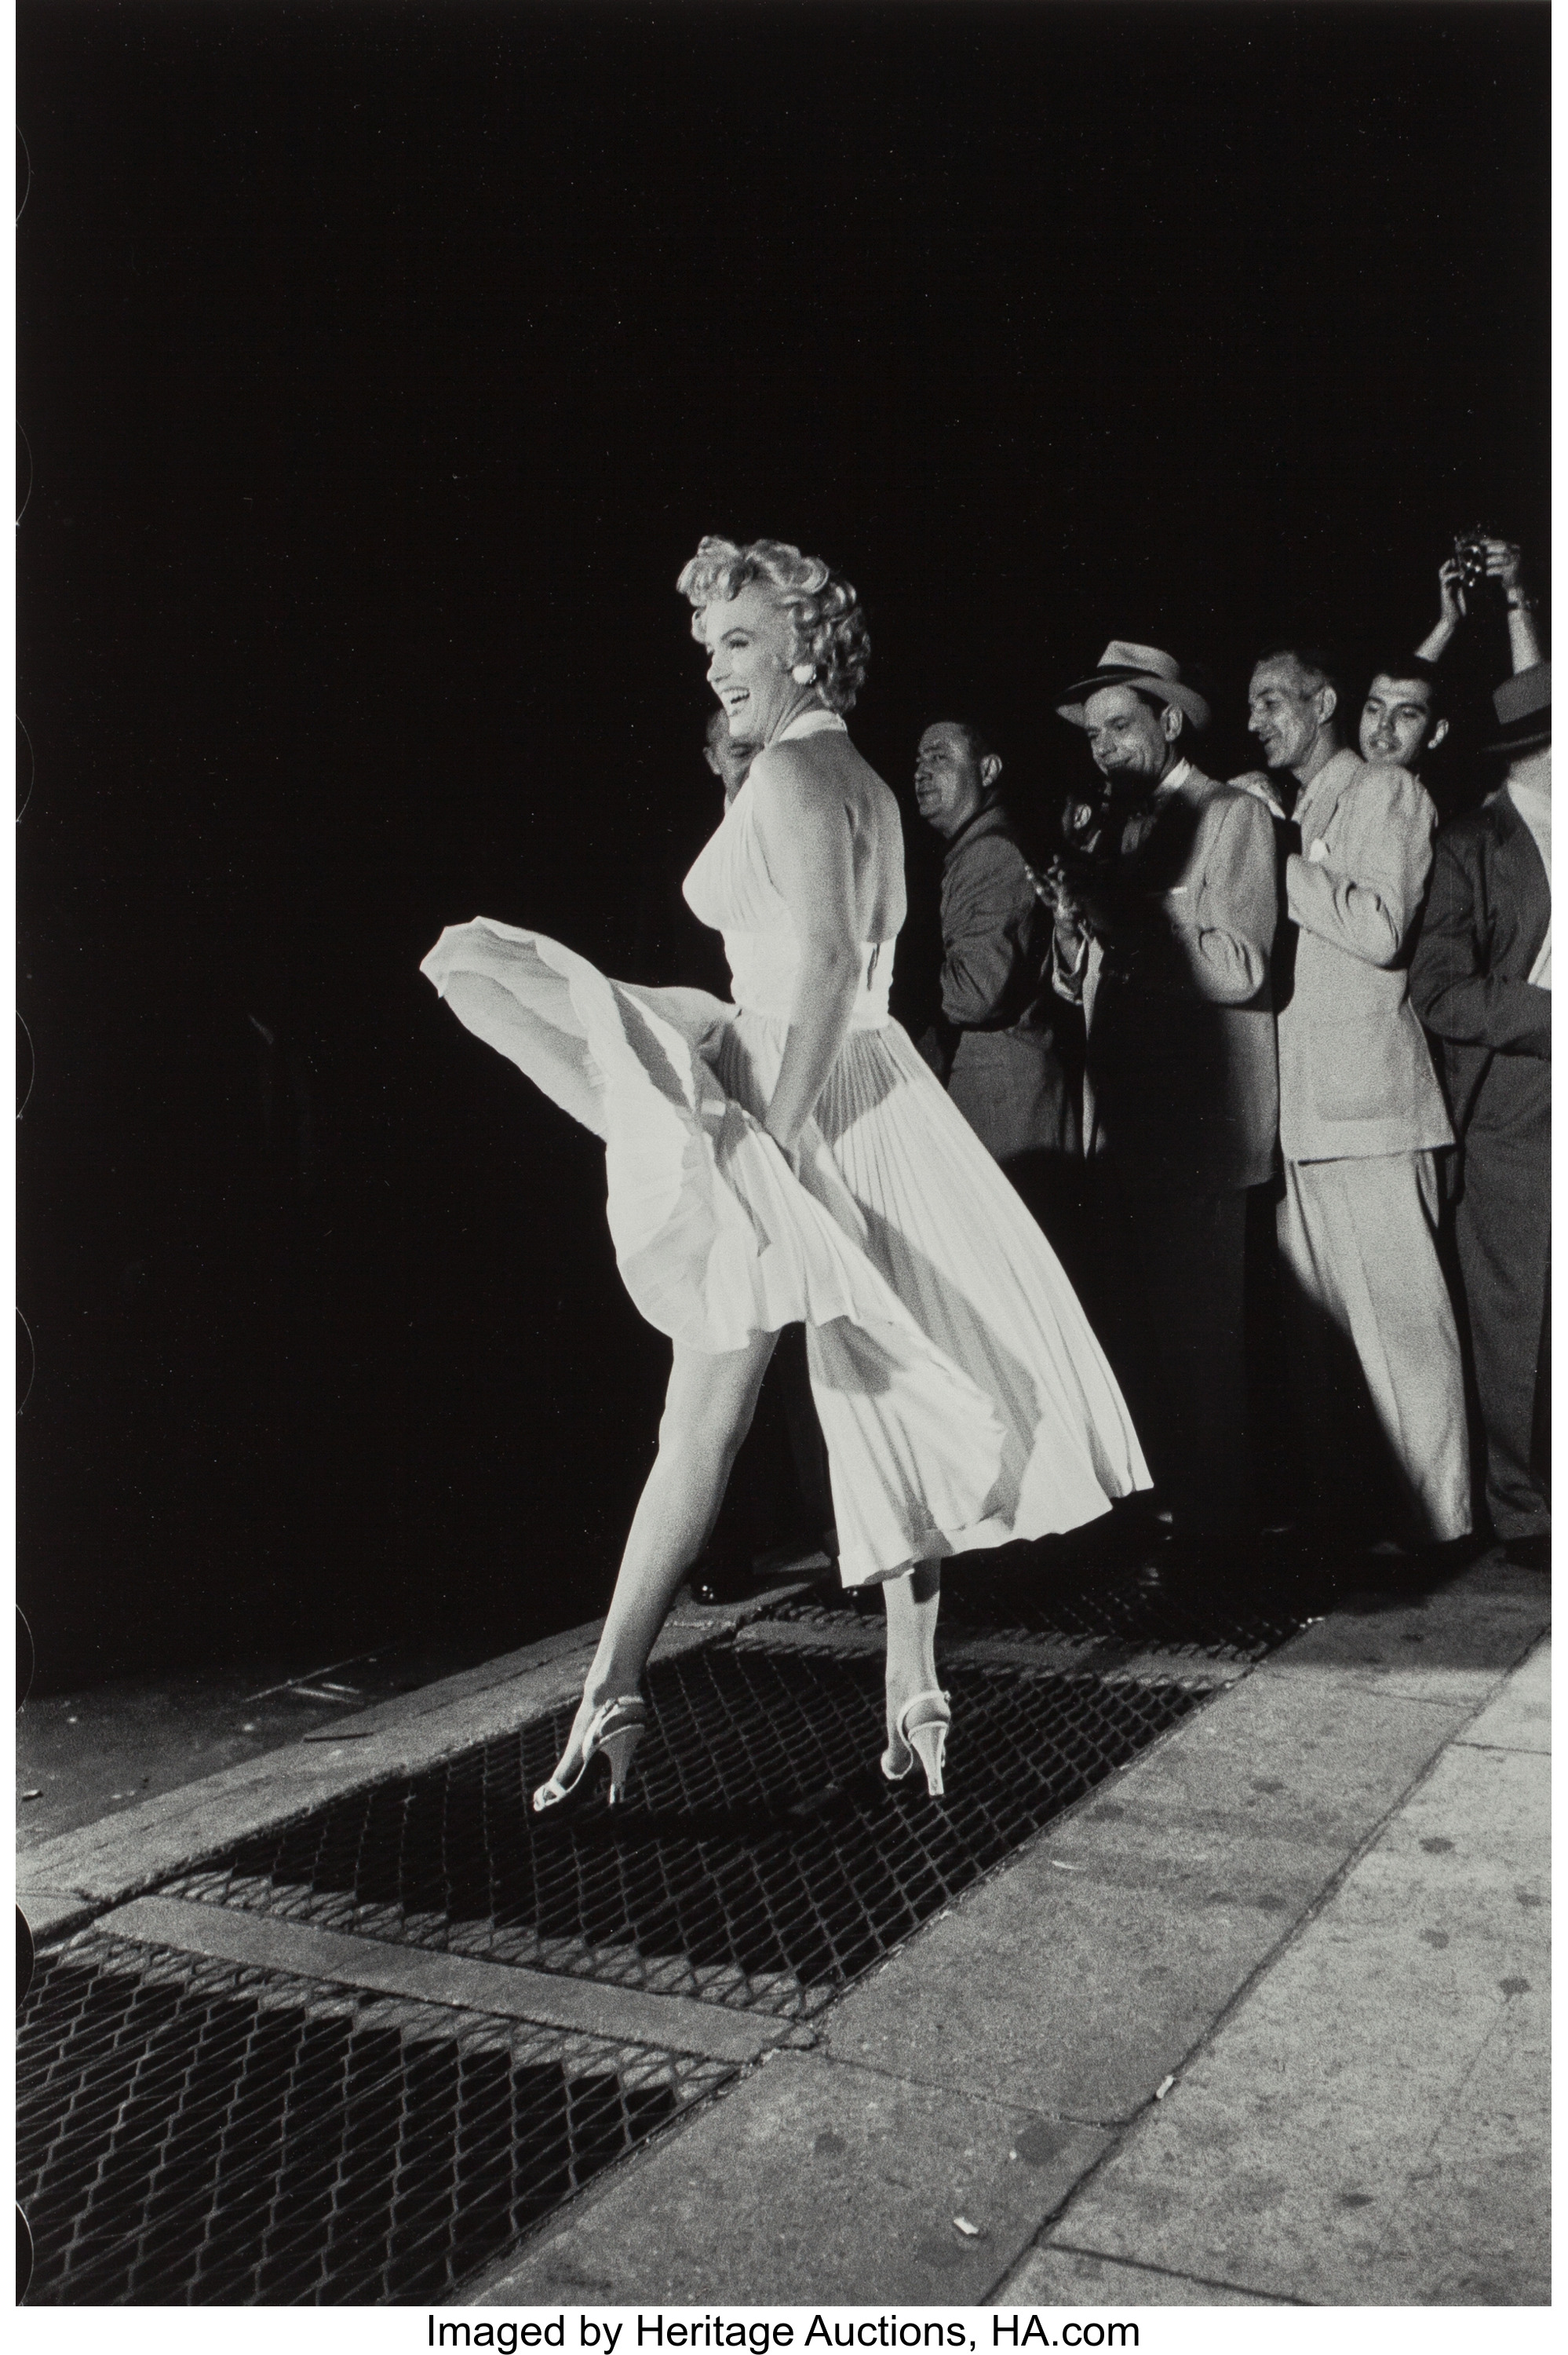 New York City (Marilyn Monroe in white dress), 1954